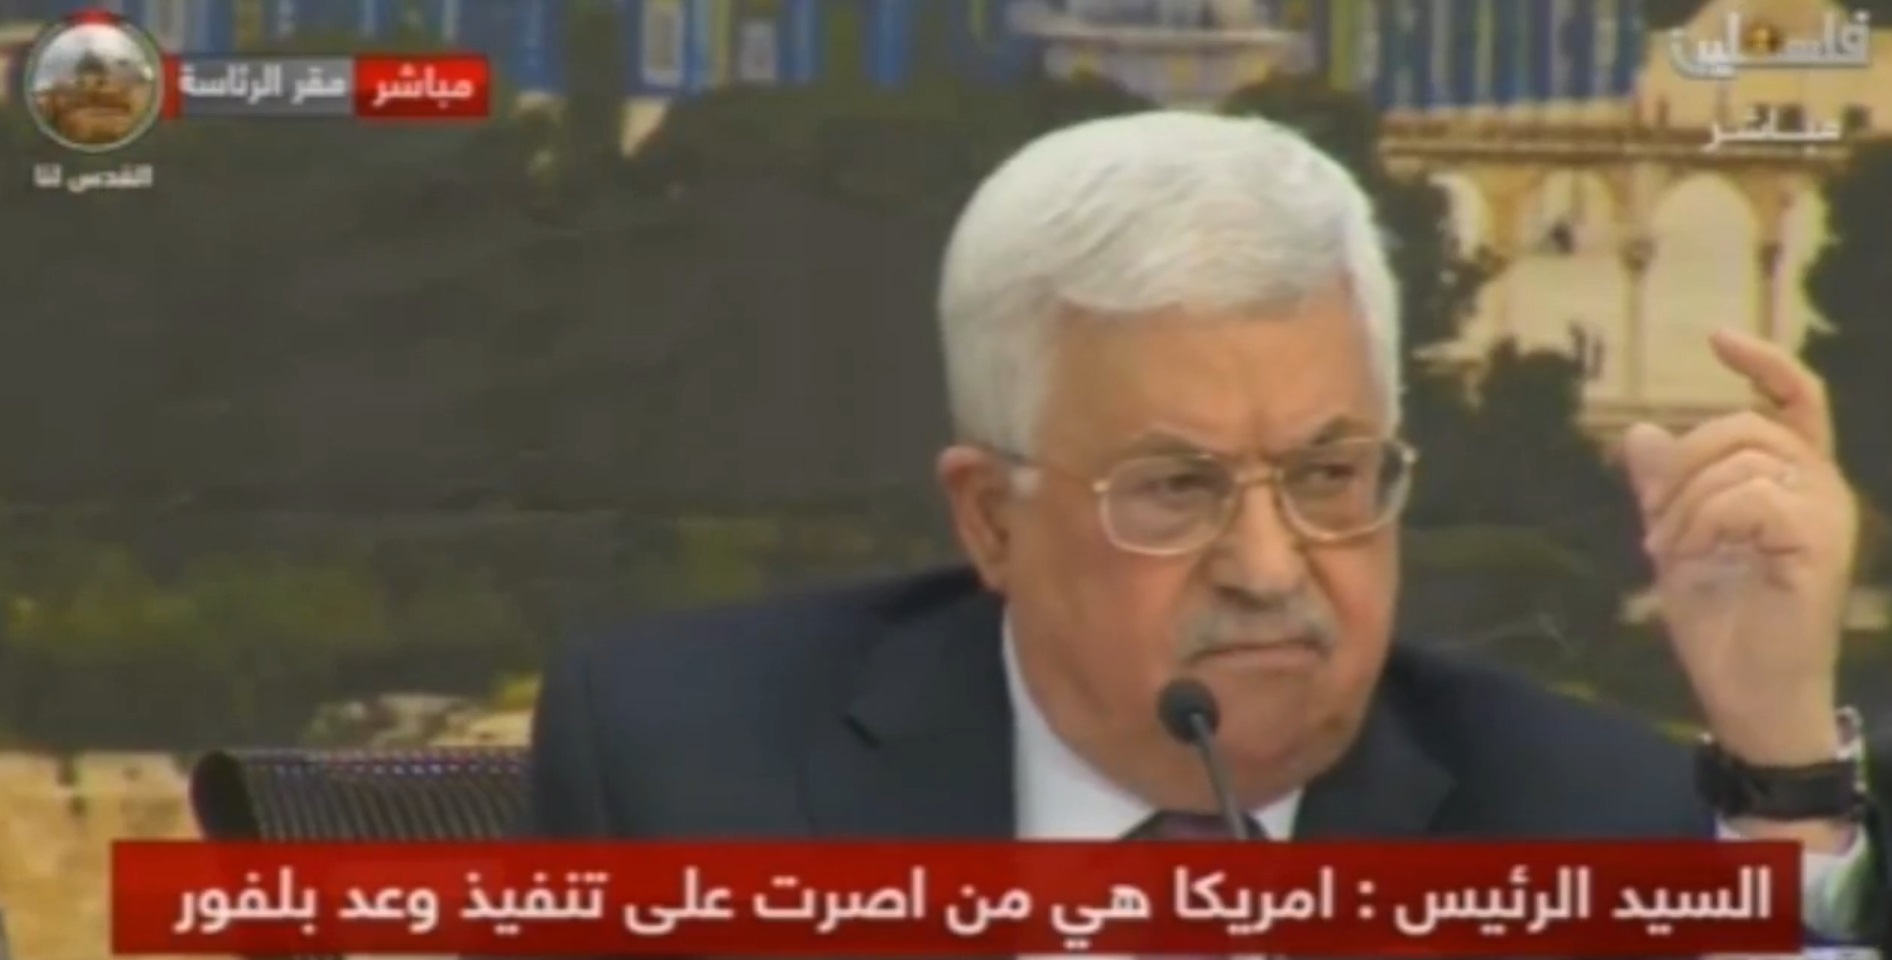 الرئيس يدعو لإعادة النظر في الاتفاقات الموقعة بين منظمة التحرير وإسرائيل